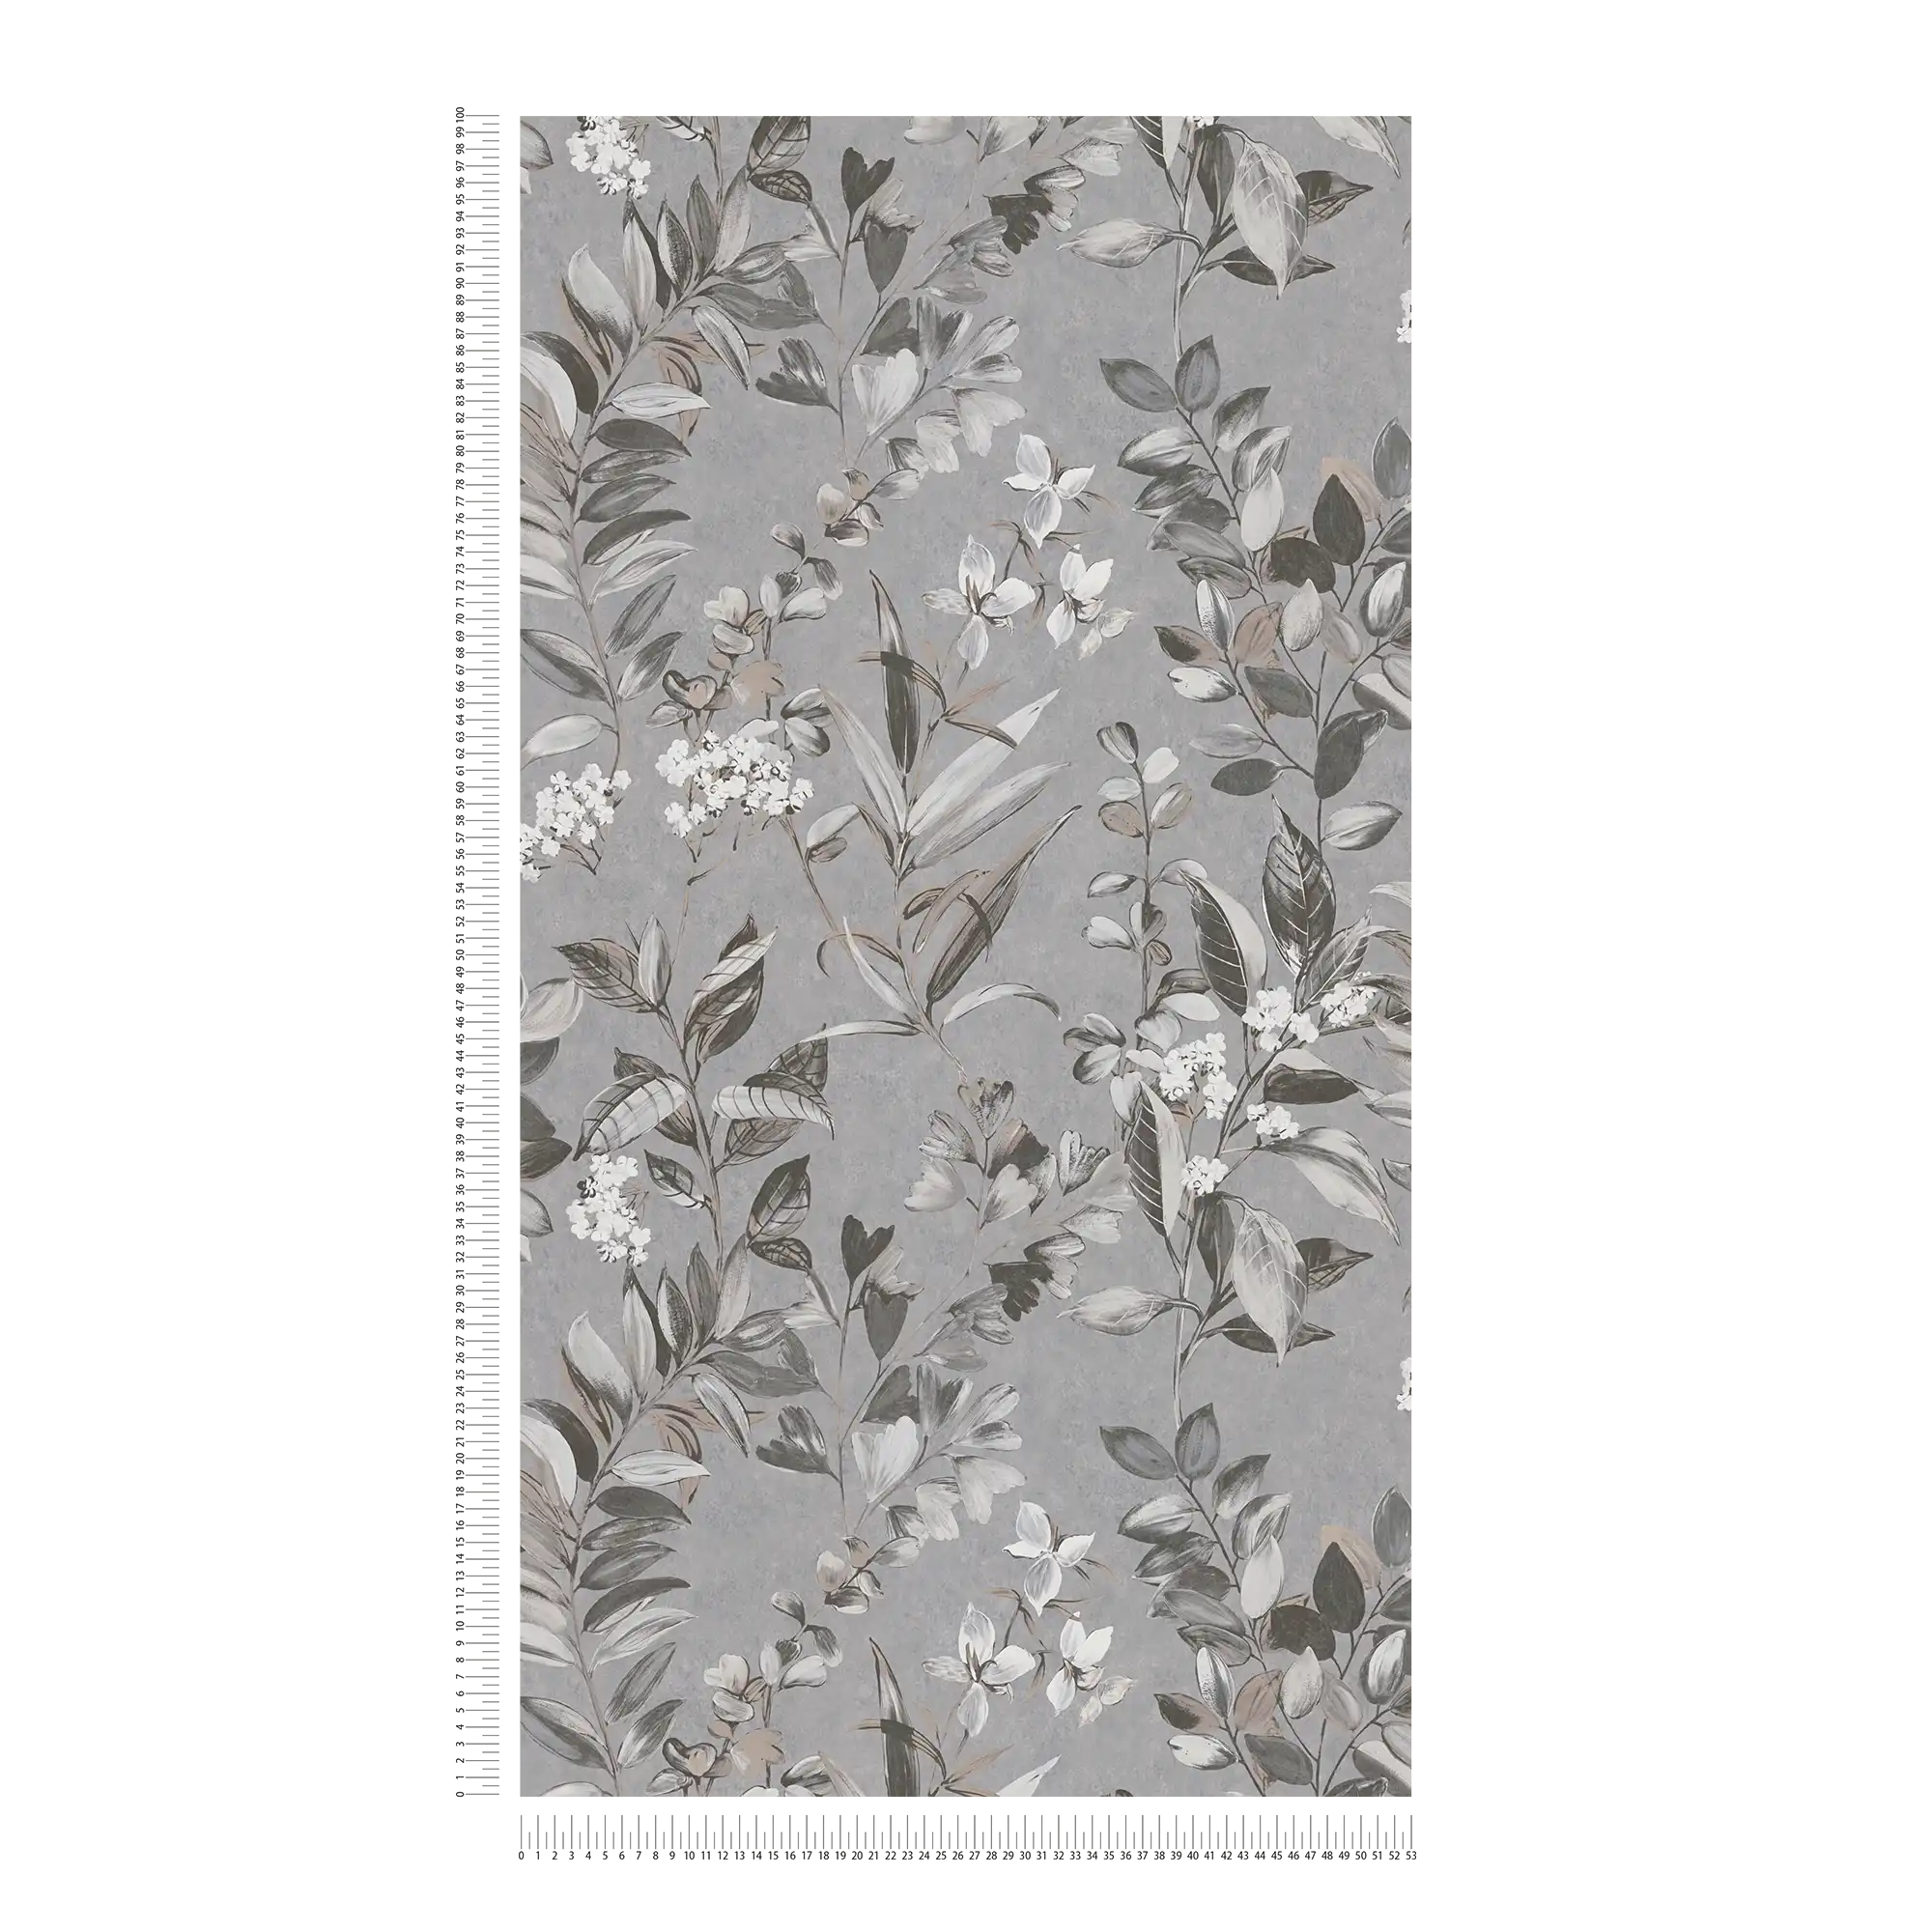             Carta da parati in tessuto non tessuto con motivo floreale - grigio, bianco, nero
        